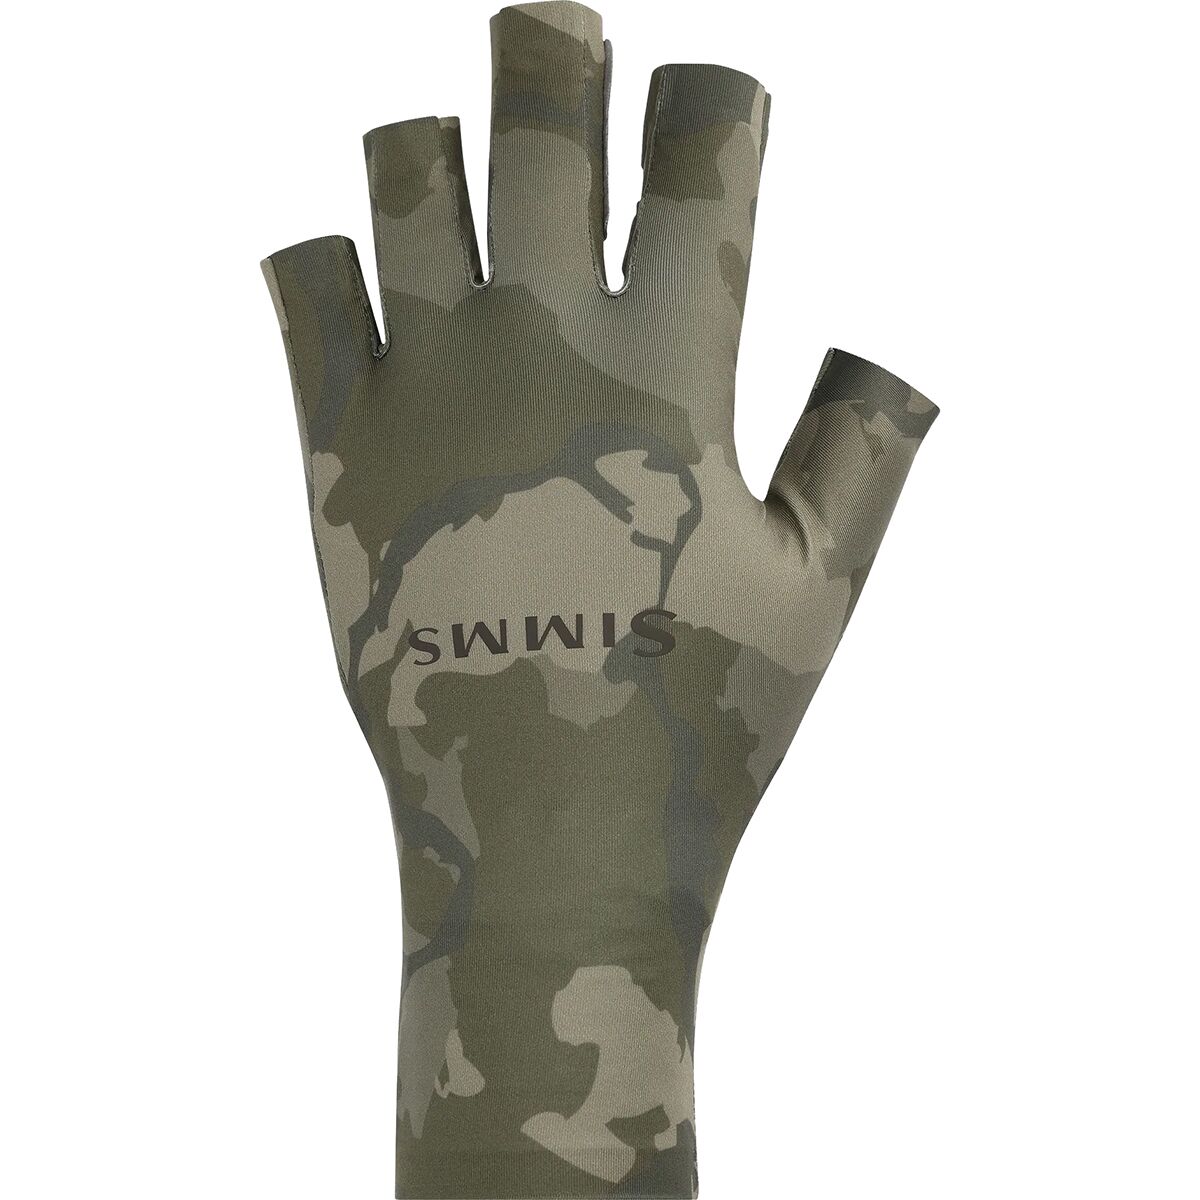 Simms Solarflex Sunglove - Regiment Camo Olive Drab - XL